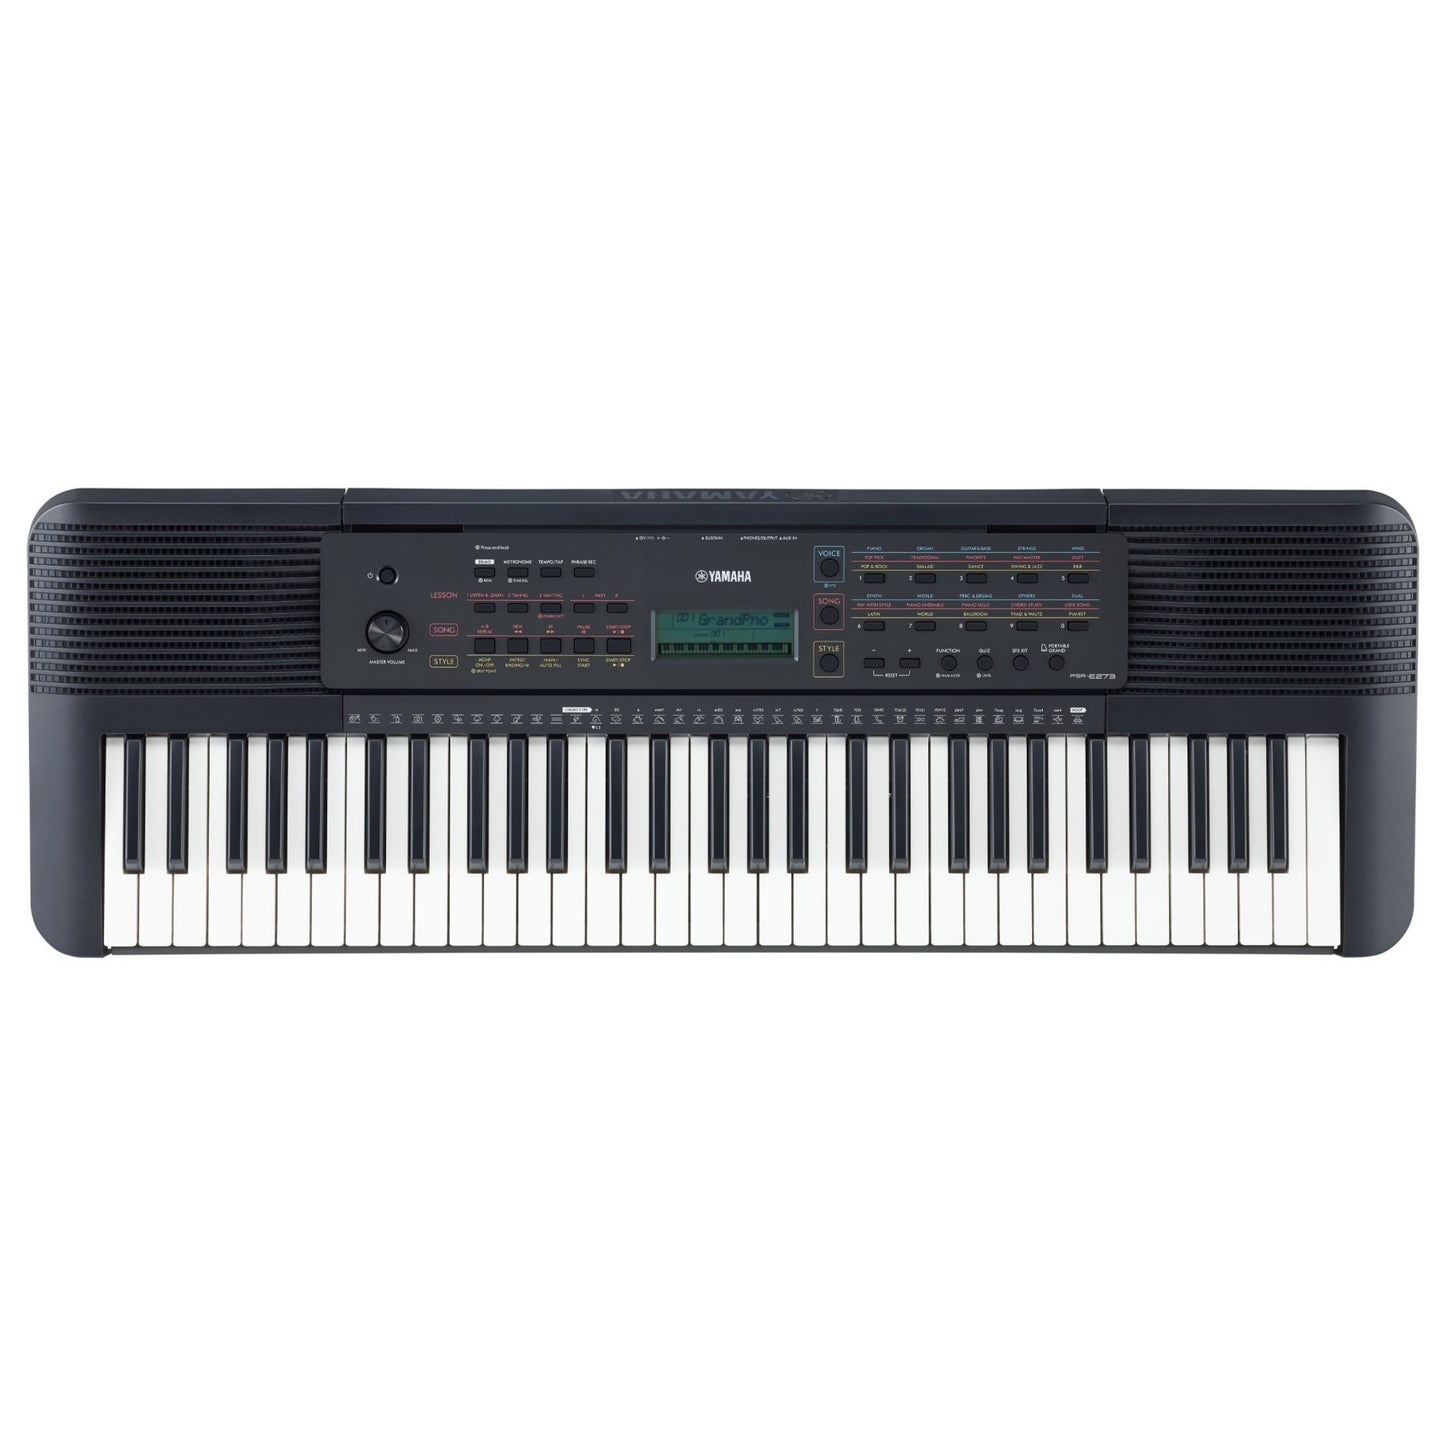 YAMAHA PSR-E273 Portable Digital Keyboard - Brand New 